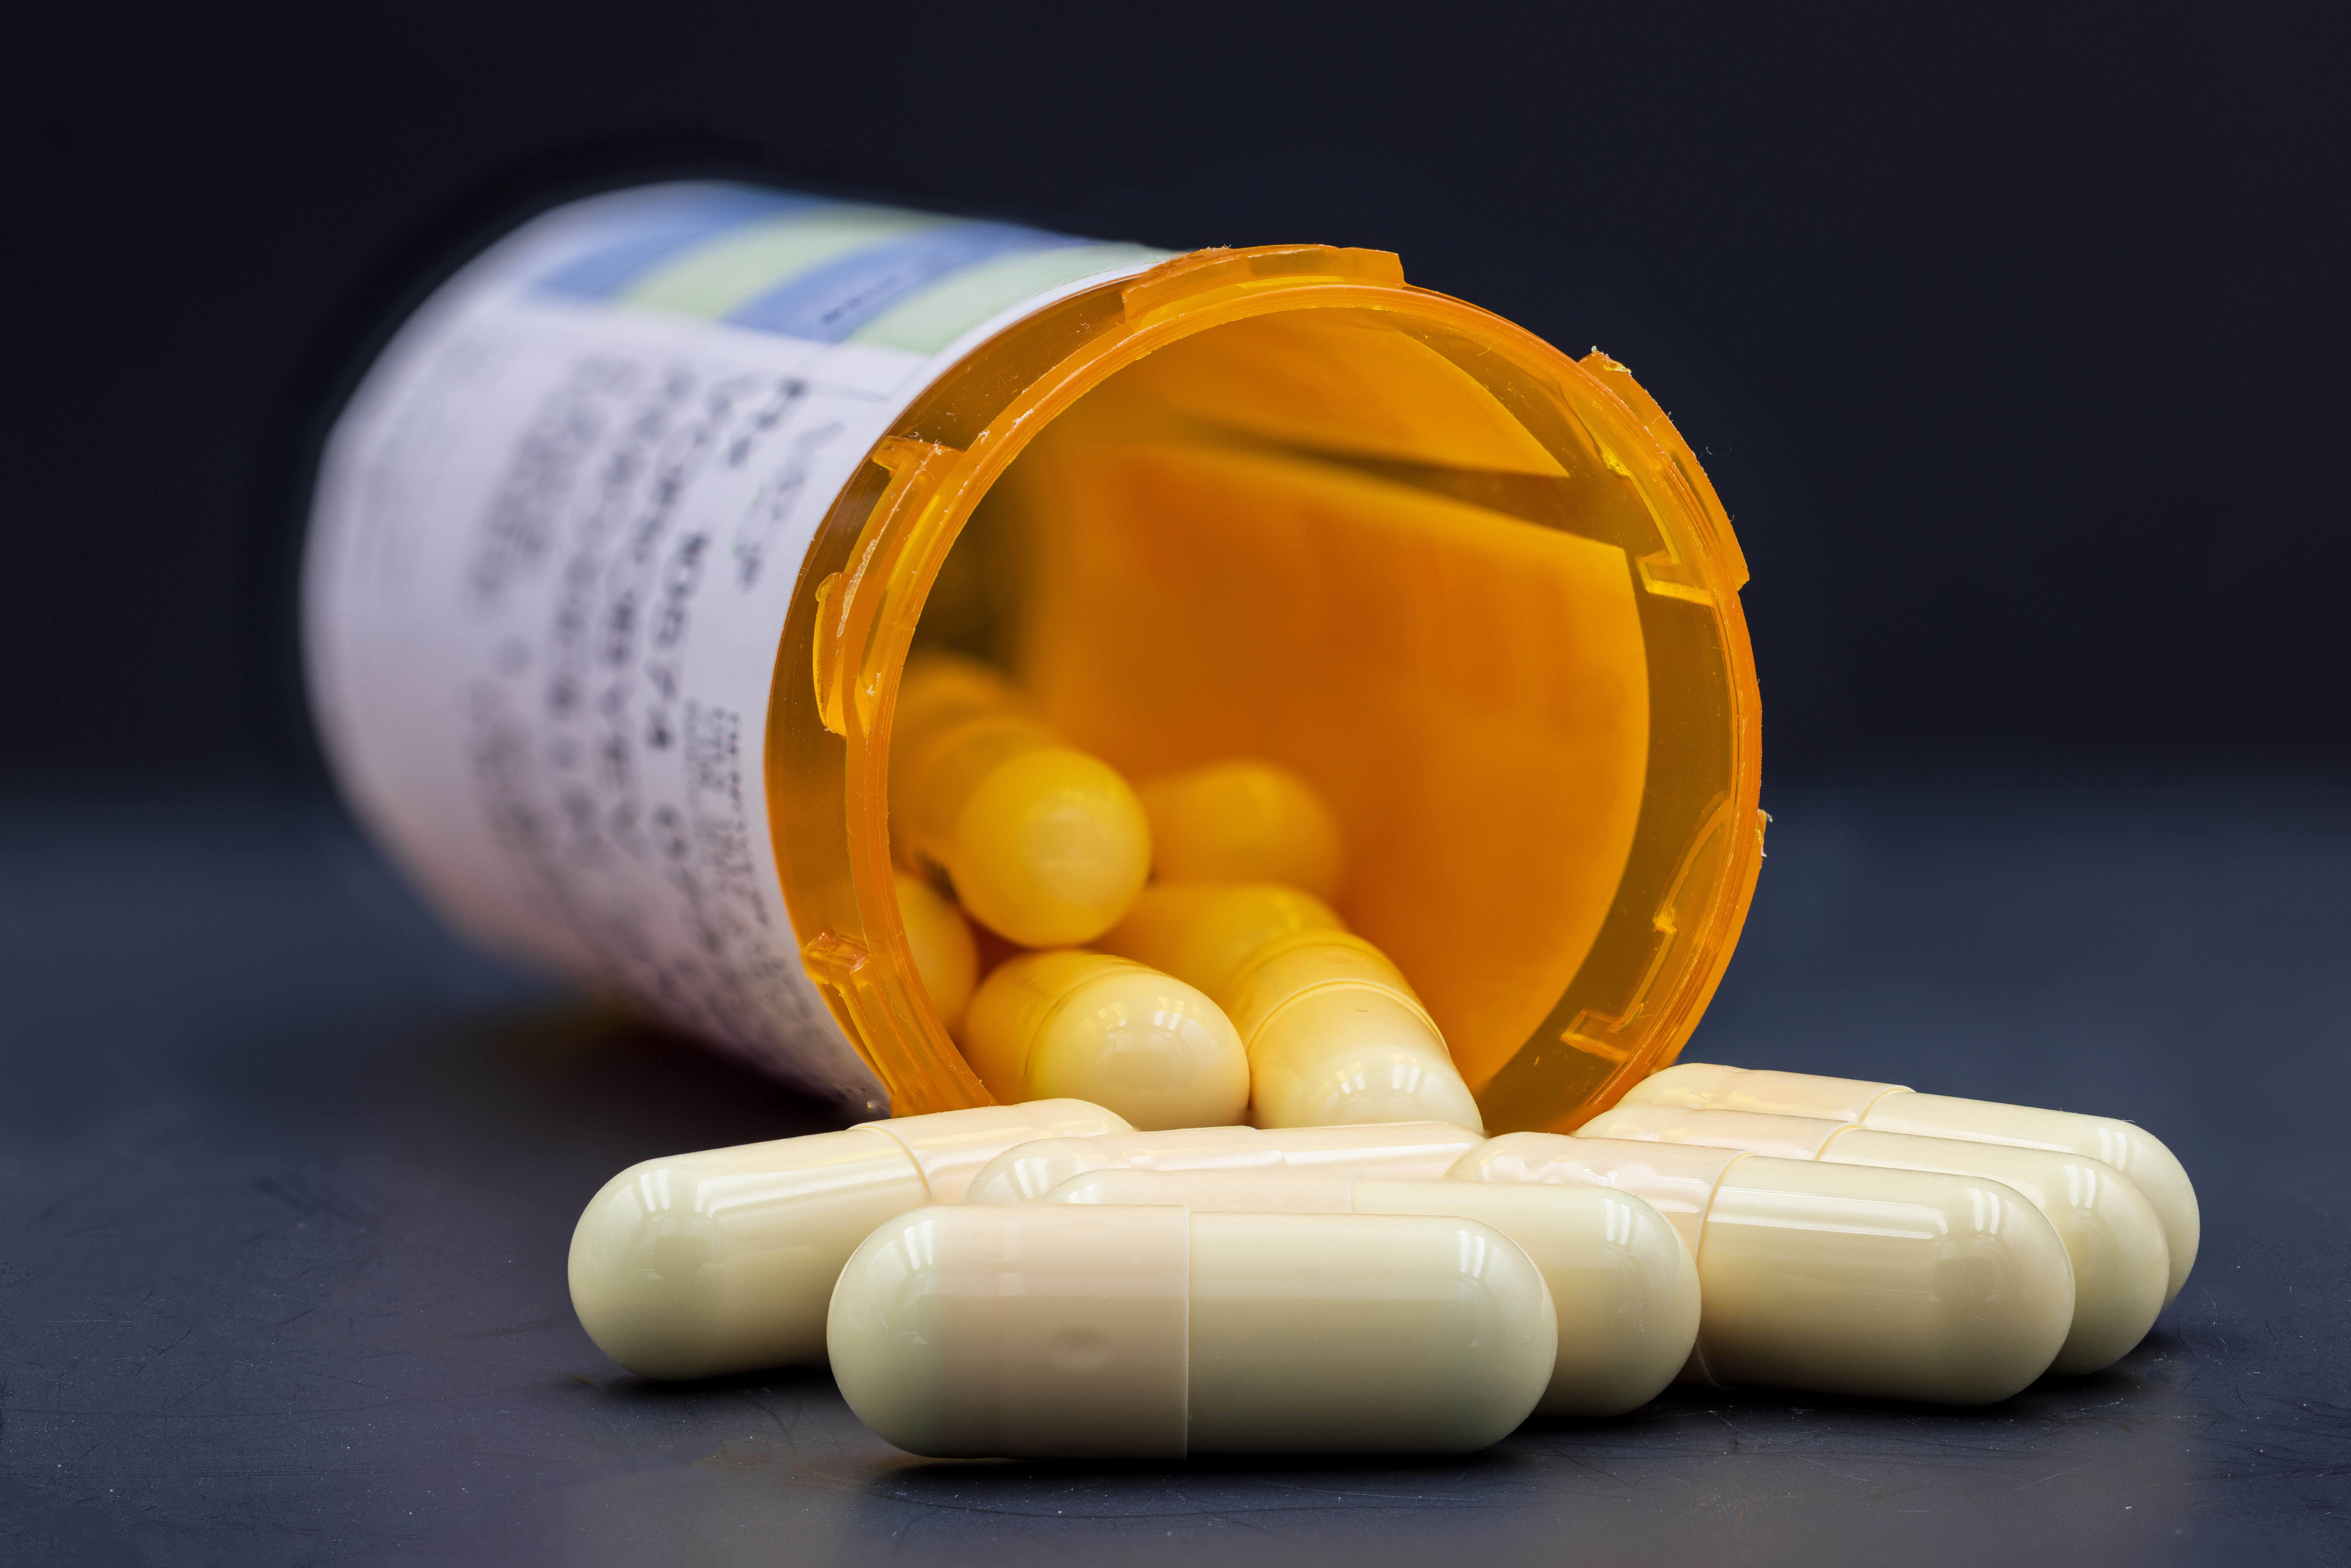 Closeup image of medical drugs spilling out of orange prescription bottle on black background